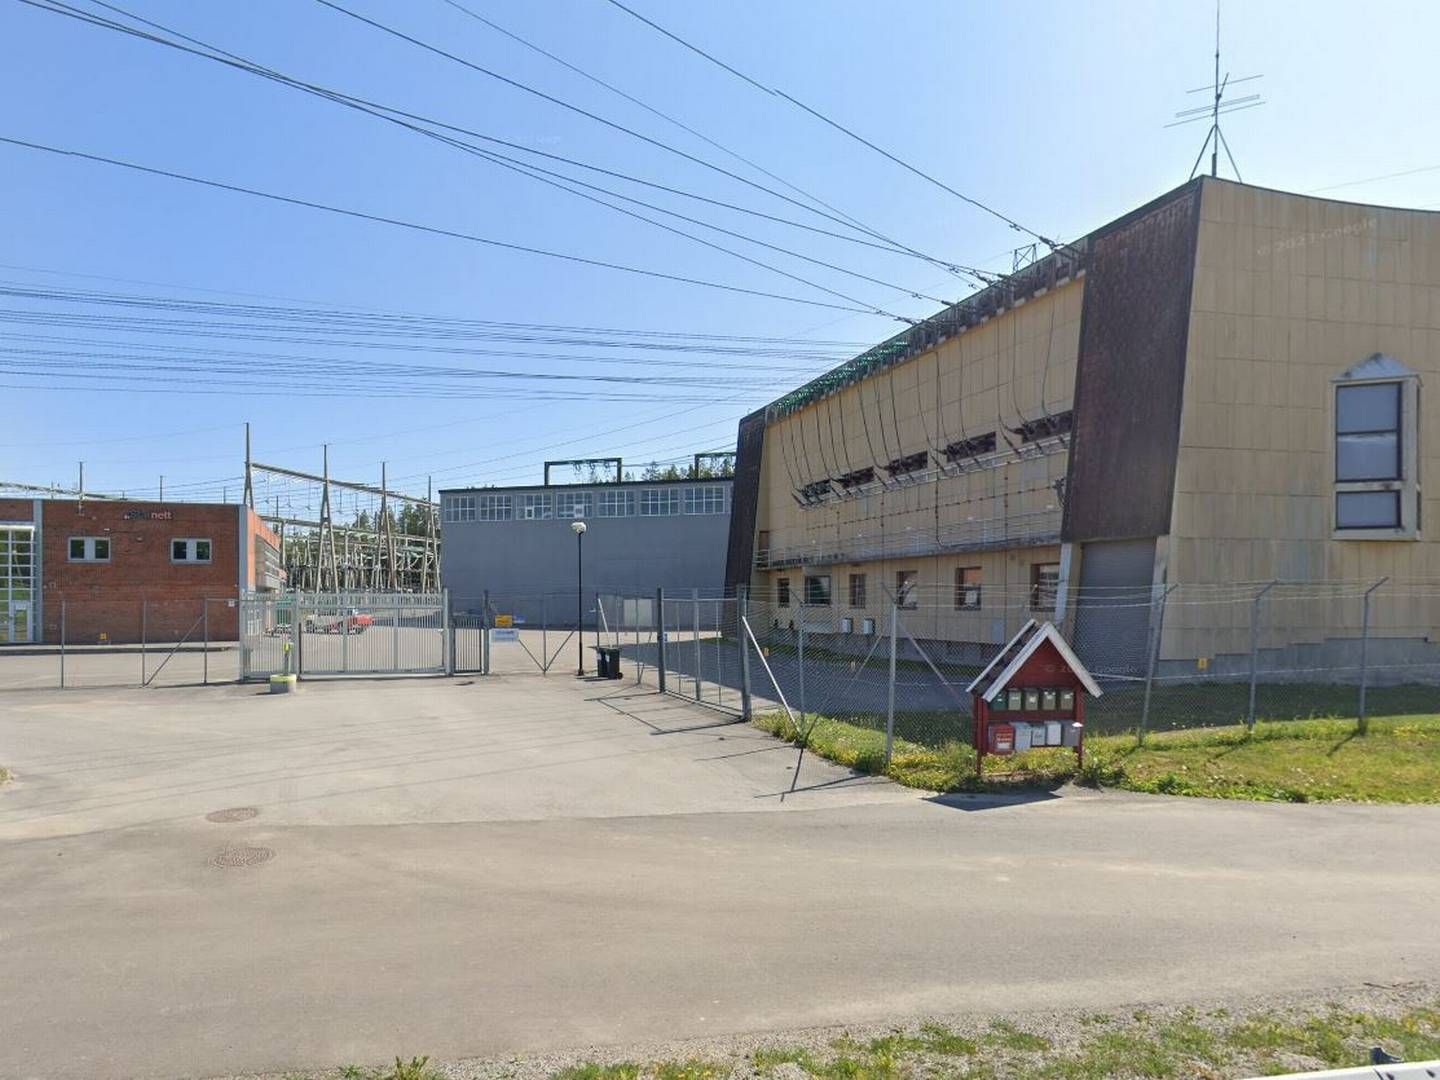 Statnett har betalt erstatning til Elvia etter strømbruddet som følge av arbeid på Tegneby transformatorstasjon. | Foto: Skjermbilde fra Google Maps.